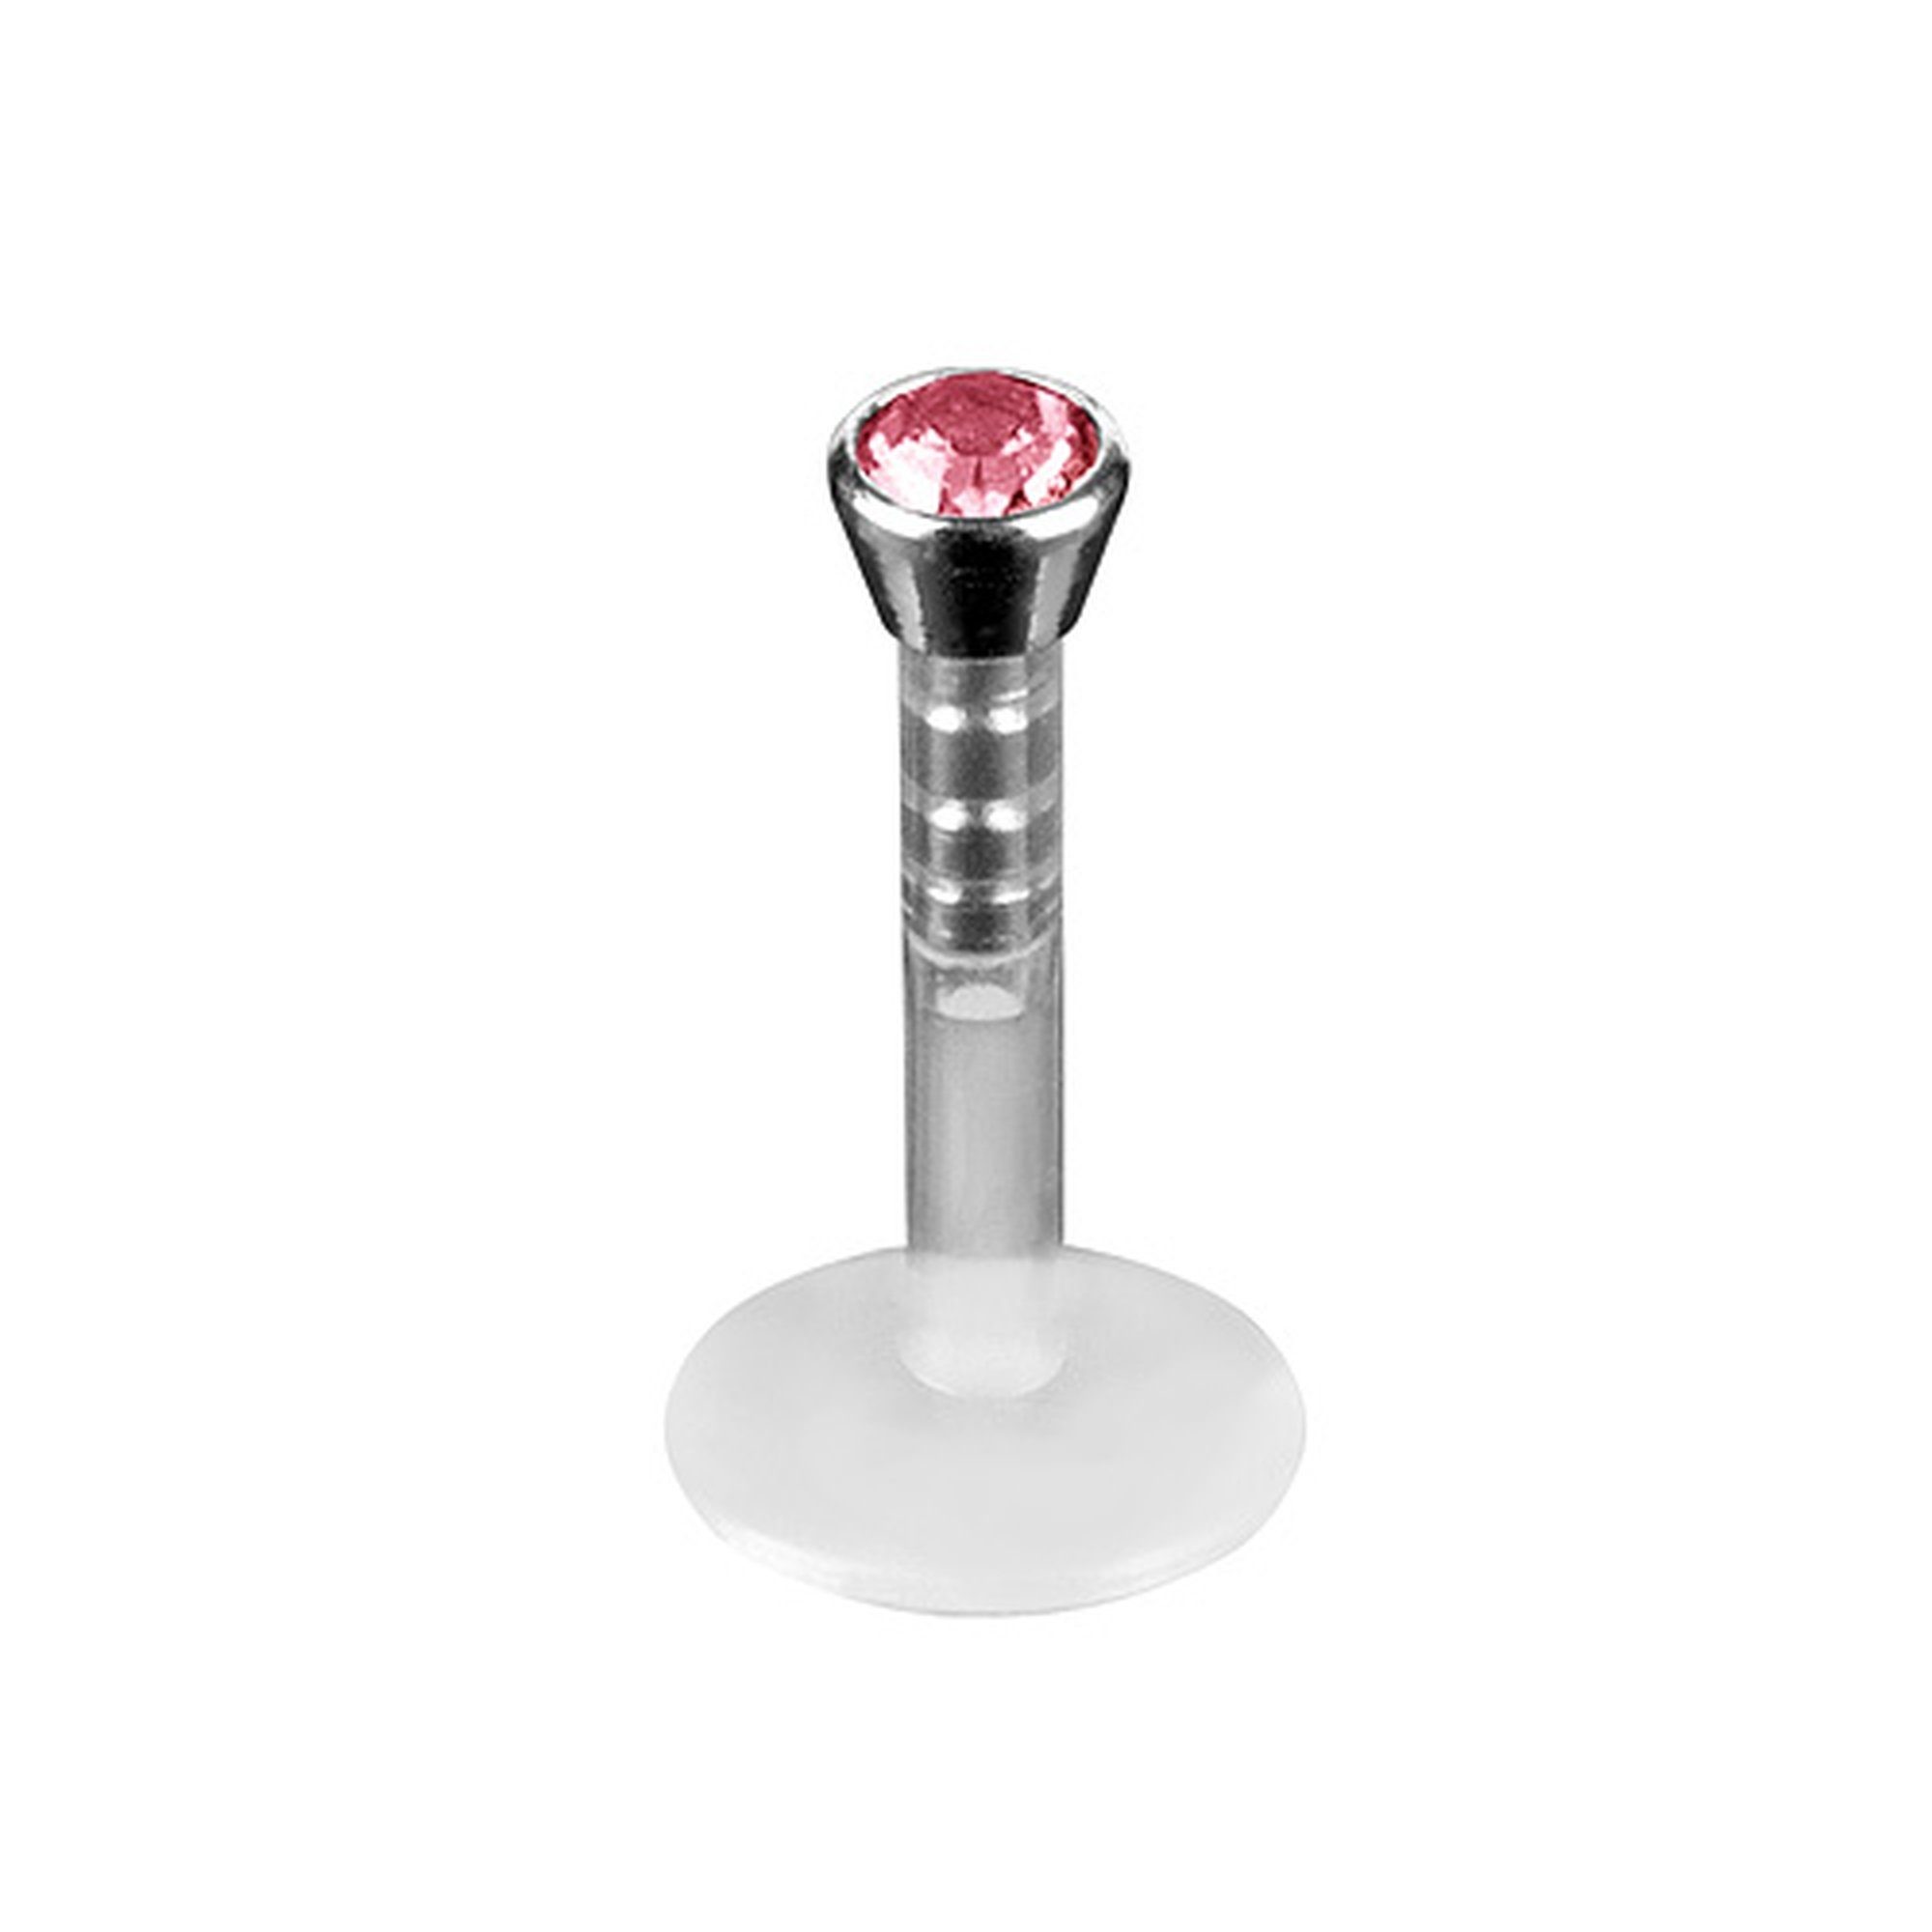 Bioflex Rosa Labret Piercing Piercing-Set Schmuck Kristall, Stecker mit Lippenpiercing Piercing Bioflex Lippenstecker Taffstyle Stecker Labret